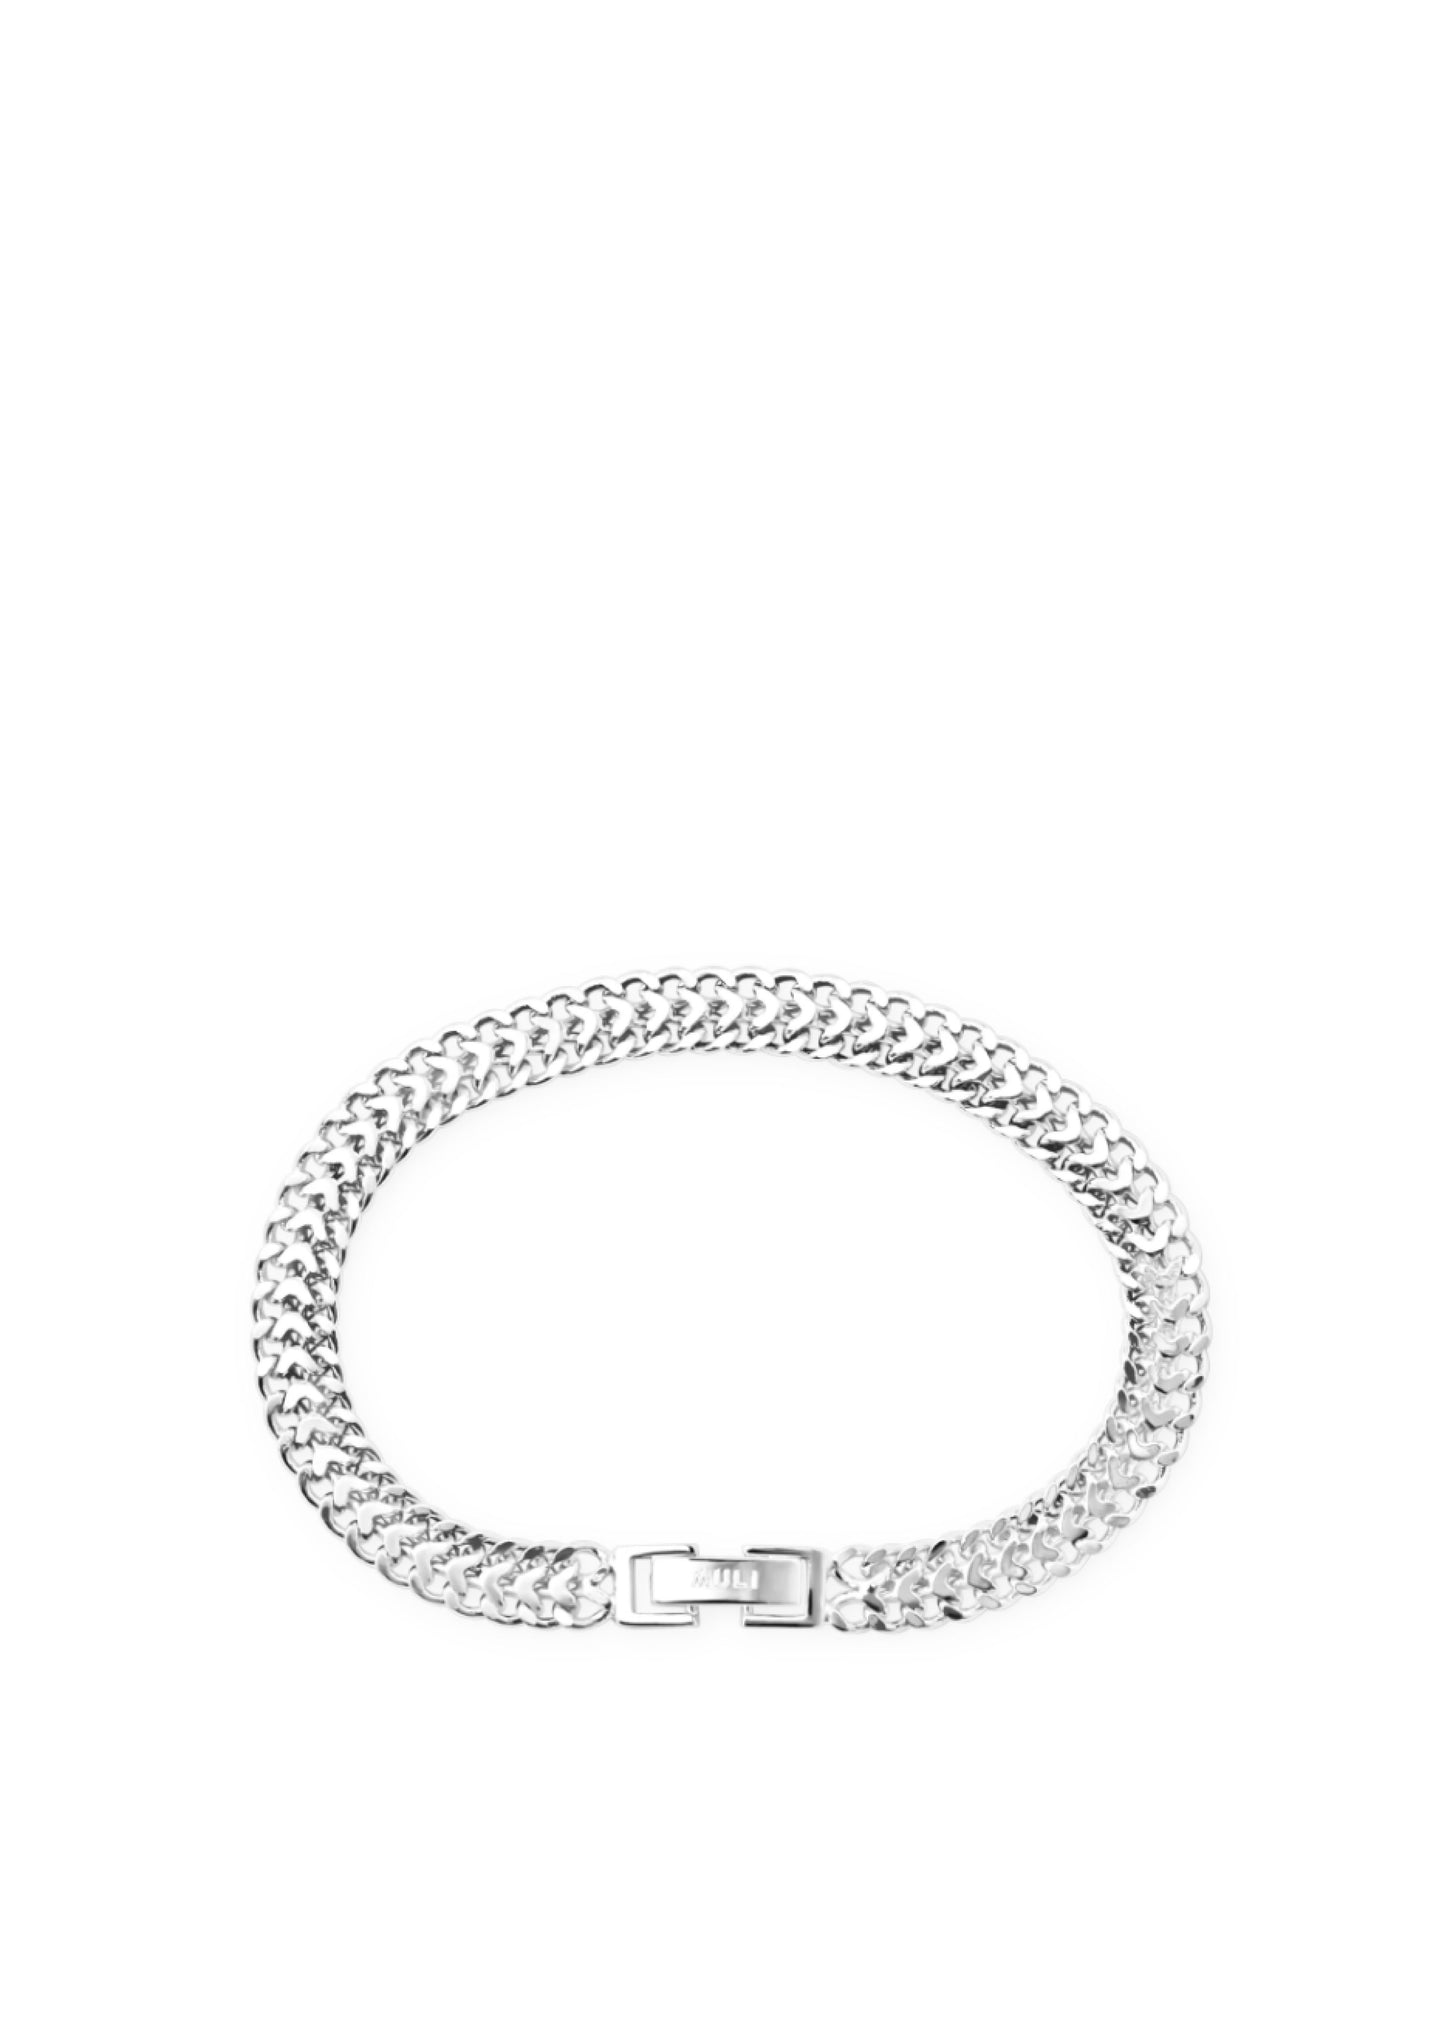 Silver Double Curb Chain Bracelet